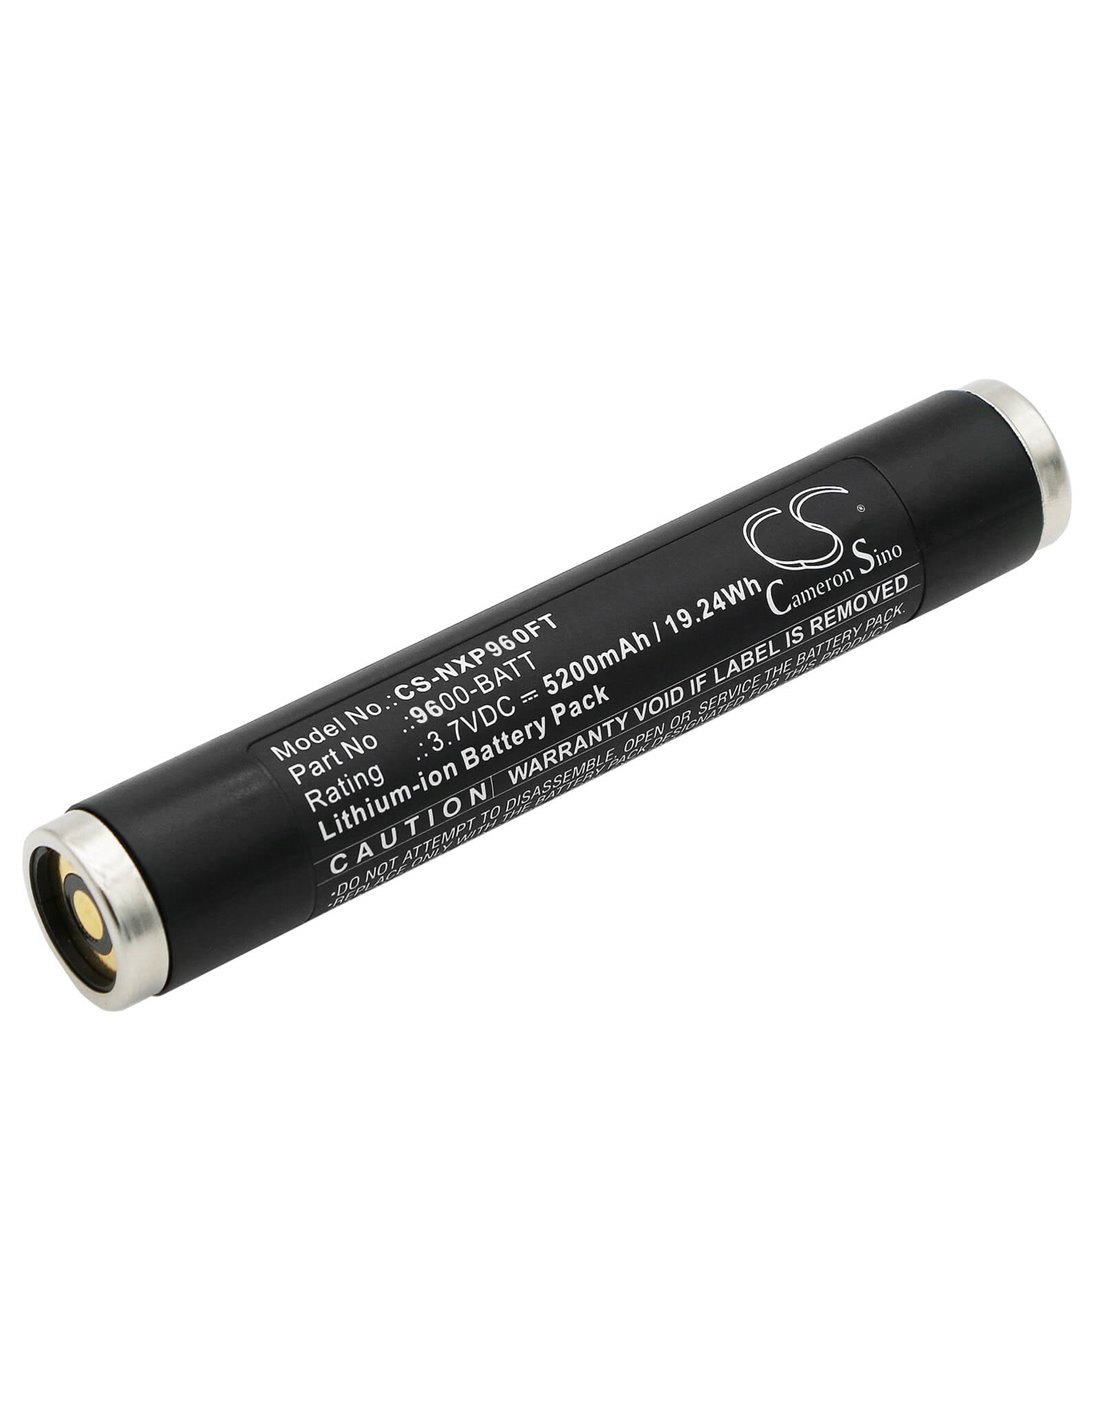 3.7V, Li-ion, 5200mAh, Battery fits Nightstick 9500, 9600, 9900, 19.24Wh